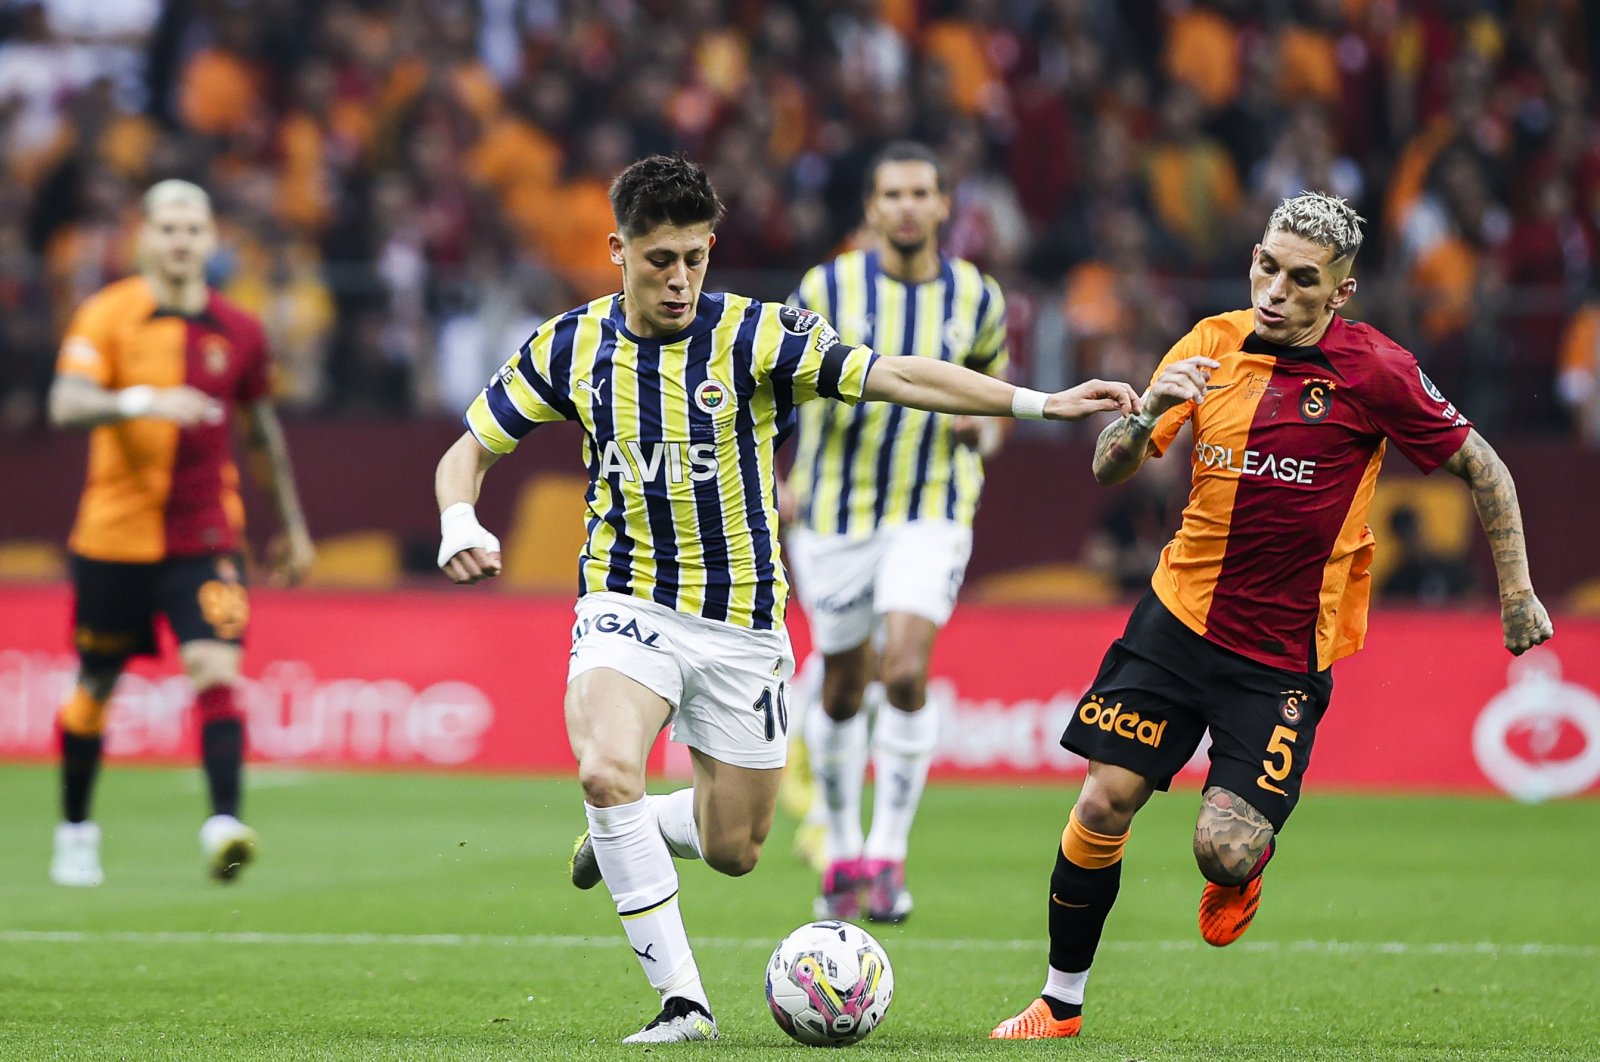 Pengalaman muda: Melihat lebih dekat dinamika usia Süper Lig Turki